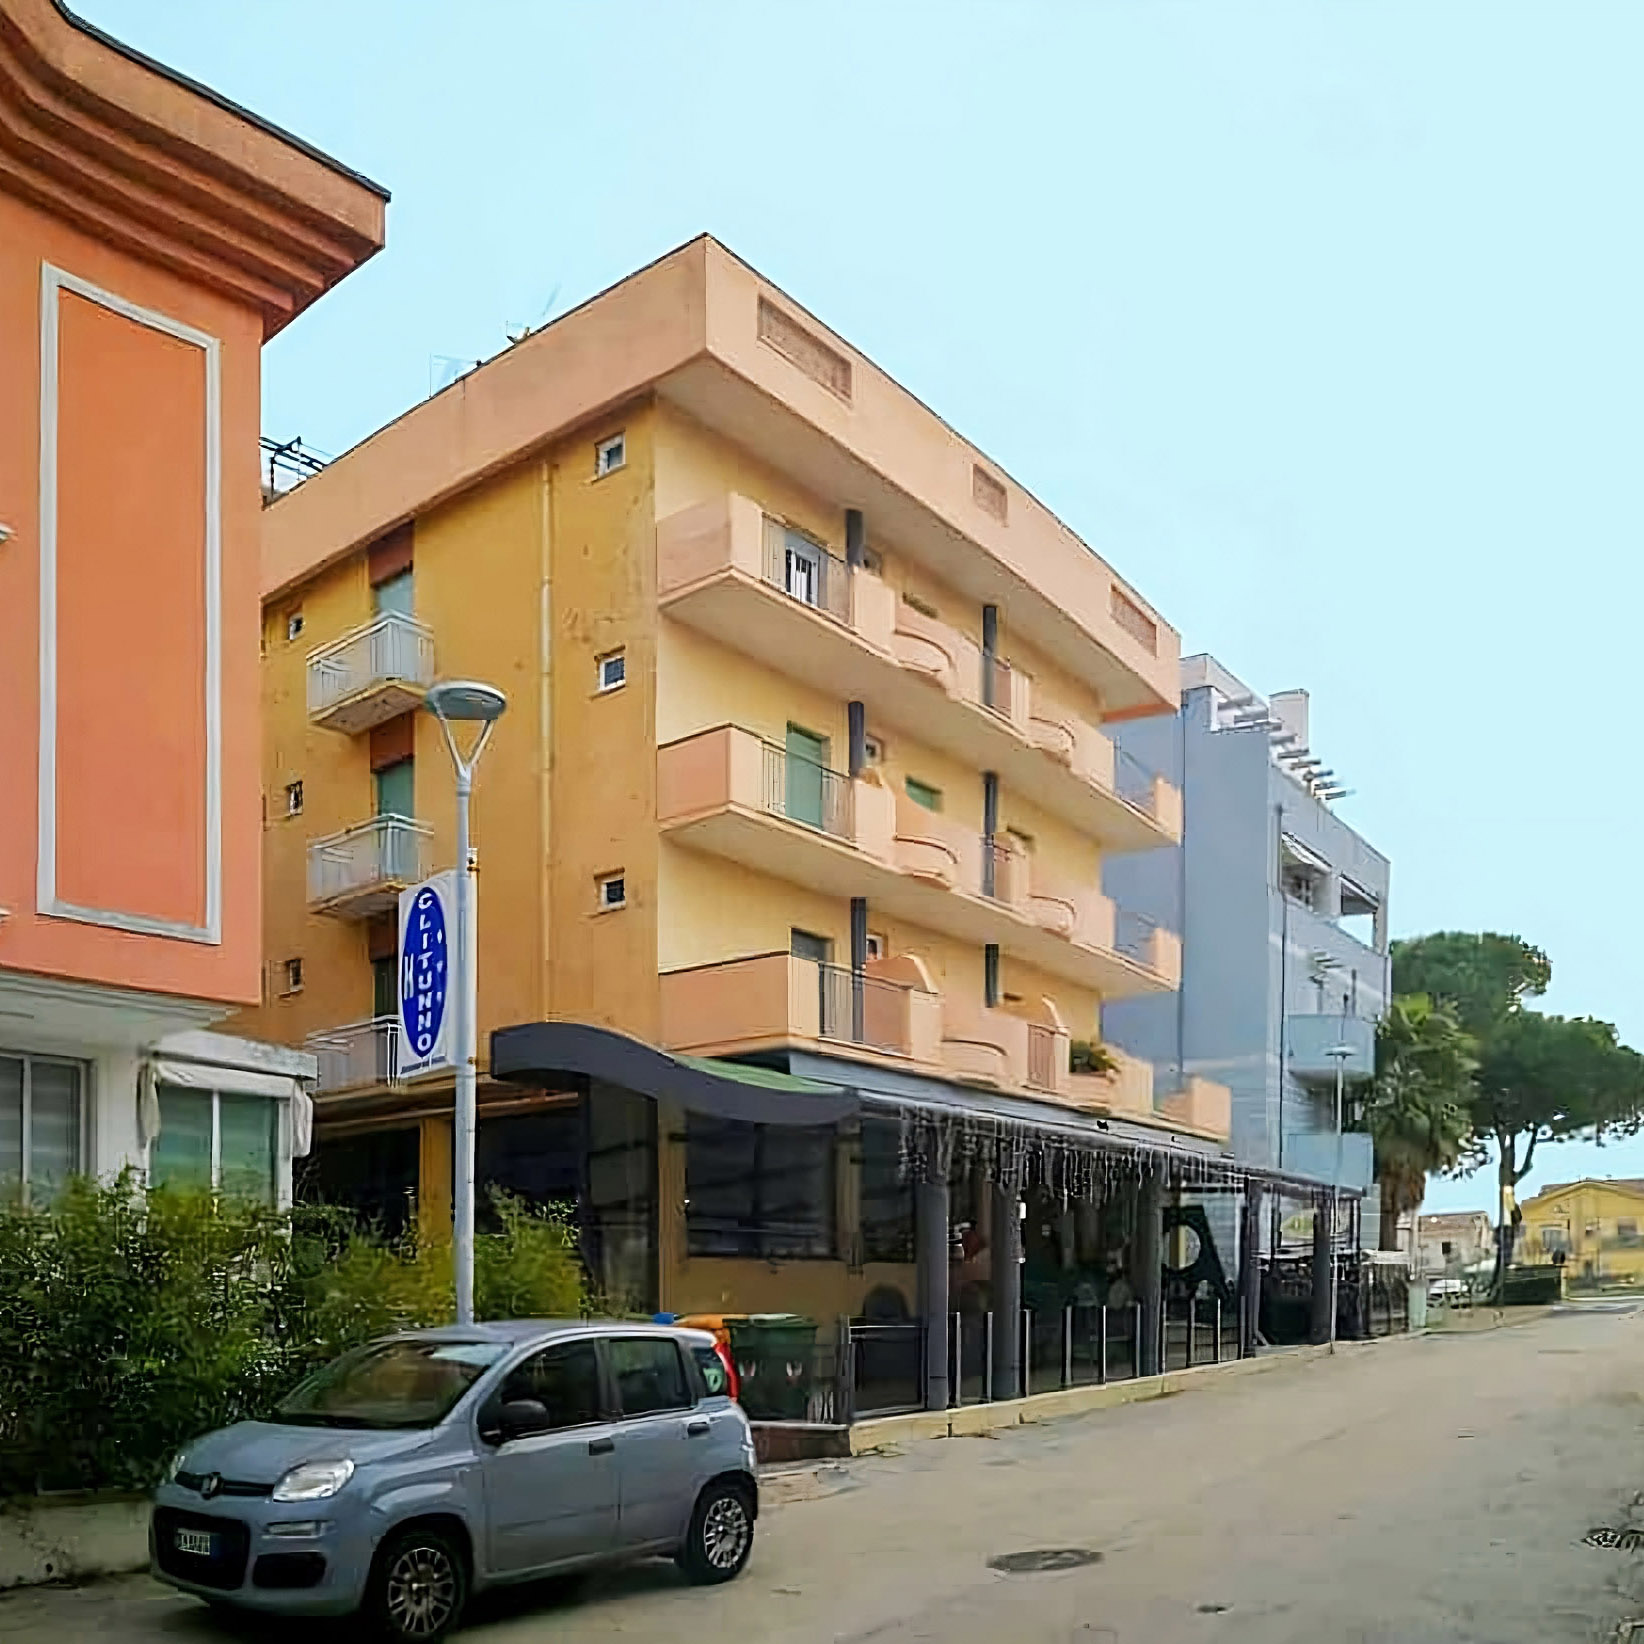 Progetto Hotel Aurora - Misano Adriatico - Pre intervento